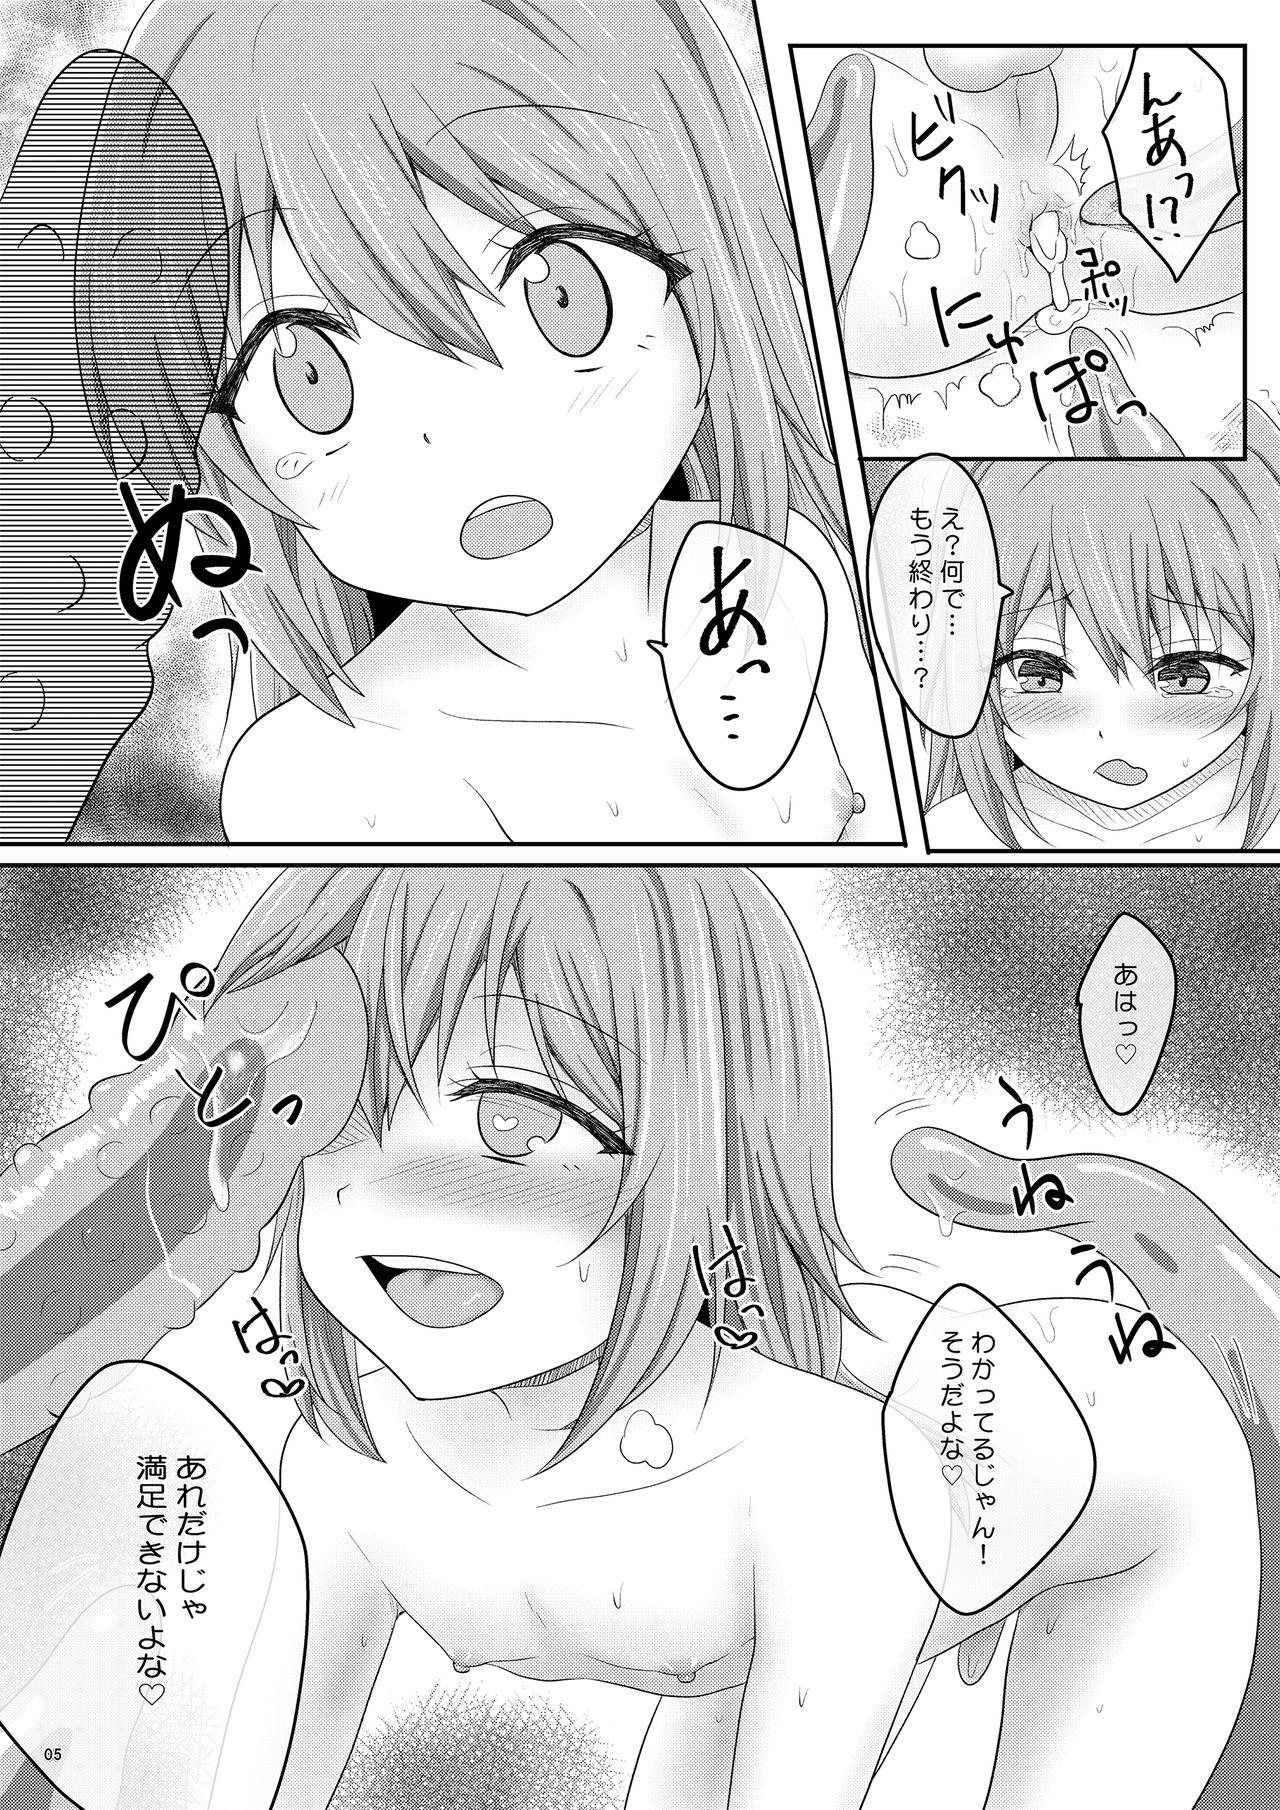 Stretch Ero Manga de Mita You na Shokushu H ga Shite Mitai - Tensei shitara slime datta ken All - Page 5